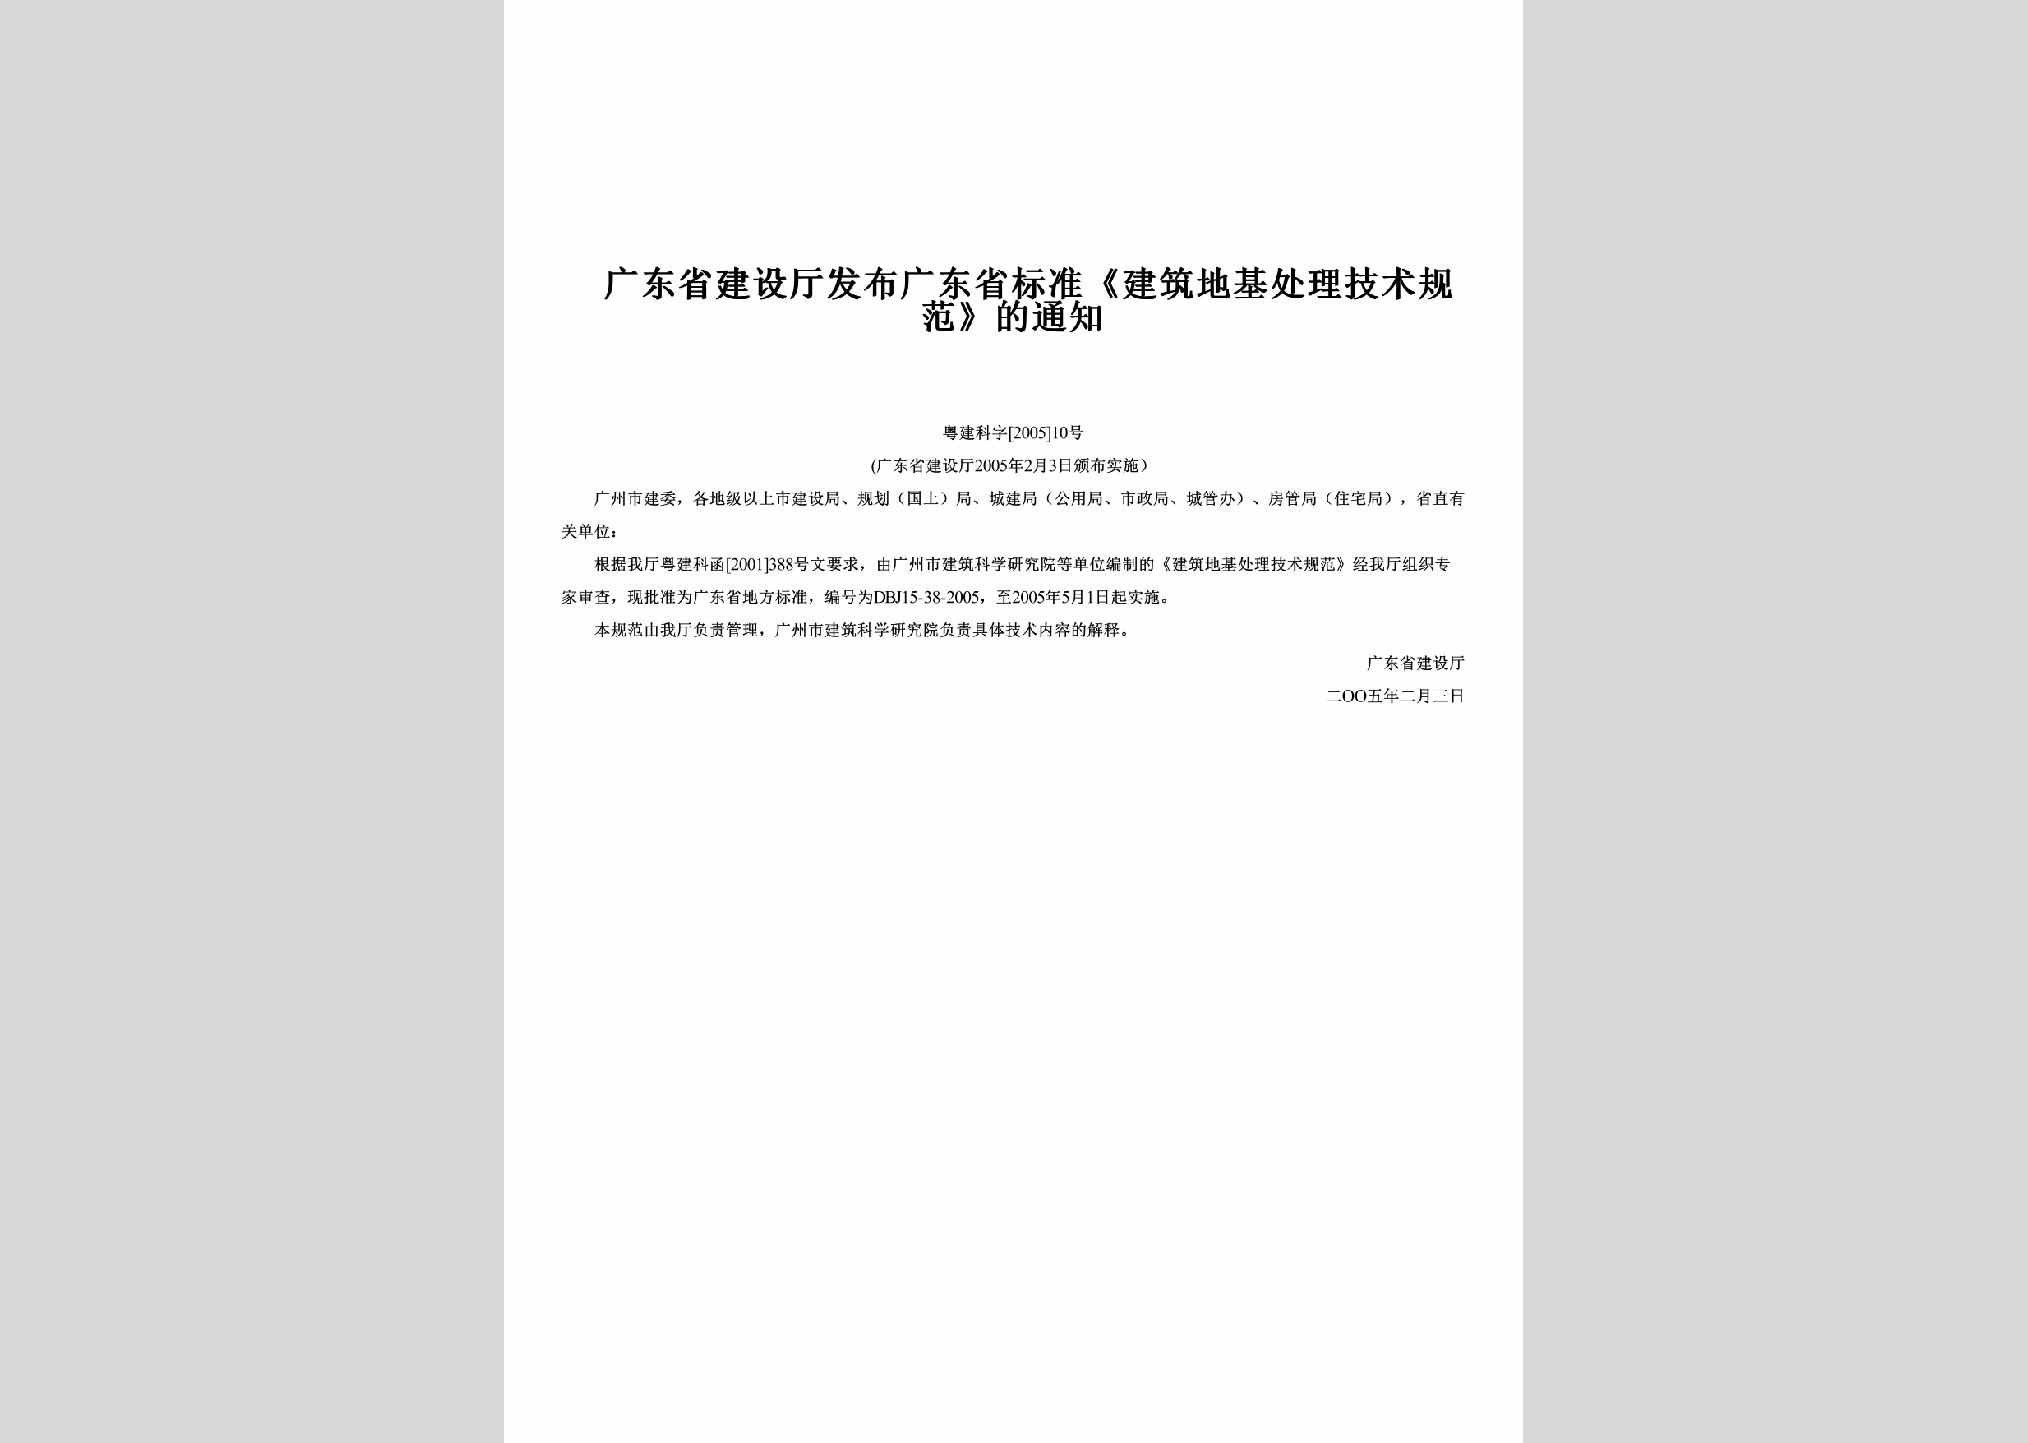 粤建科字[2005]10号：发布广东省标准《建筑地基处理技术规范》的通知